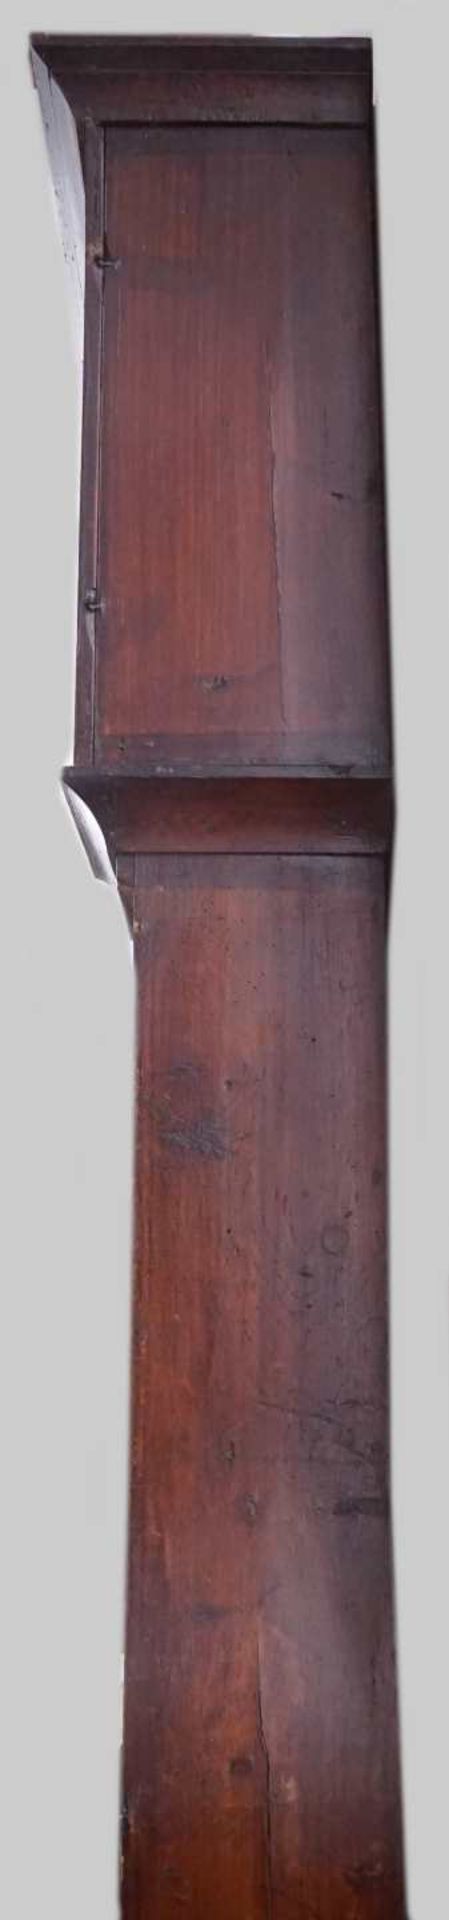 1 Standuhr 18. Jh., Weichholz geschnitzt, bemalt Emaillezifferblatt mit römischen Zif - Bild 5 aus 7